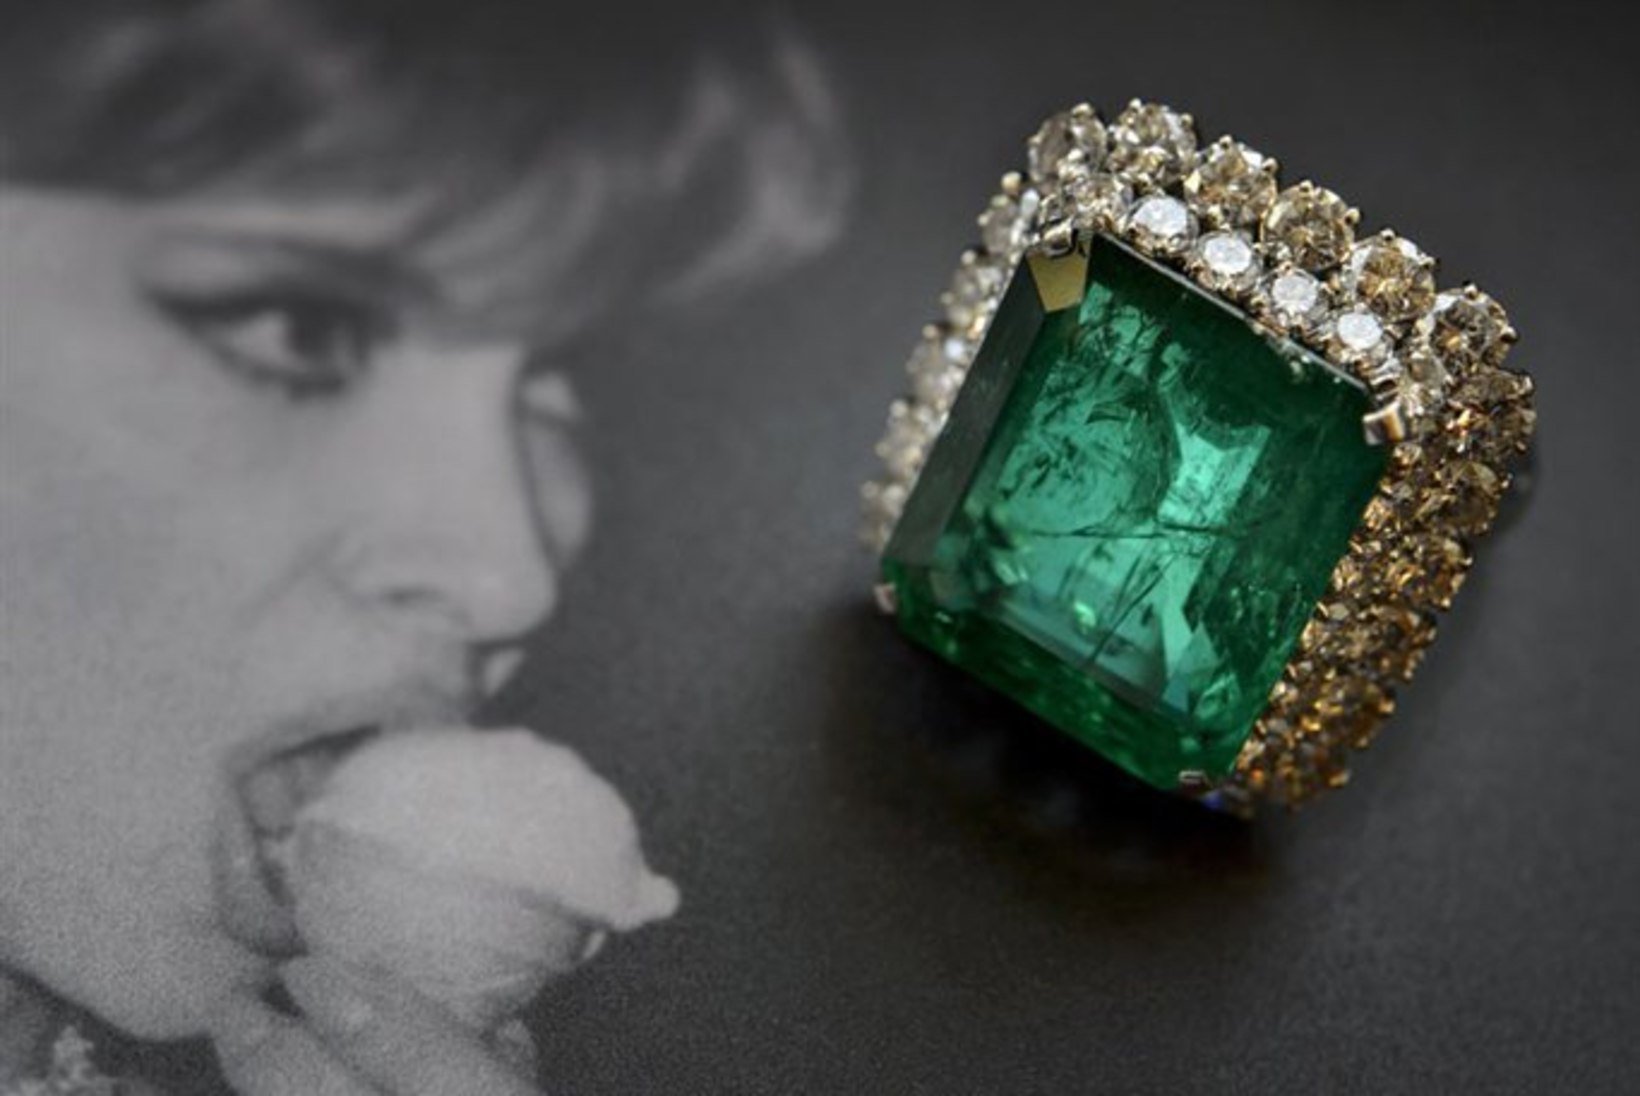 Vaata Gina Lollobrigida luksuslikke juveele, mis täna oksjonil maha müüakse